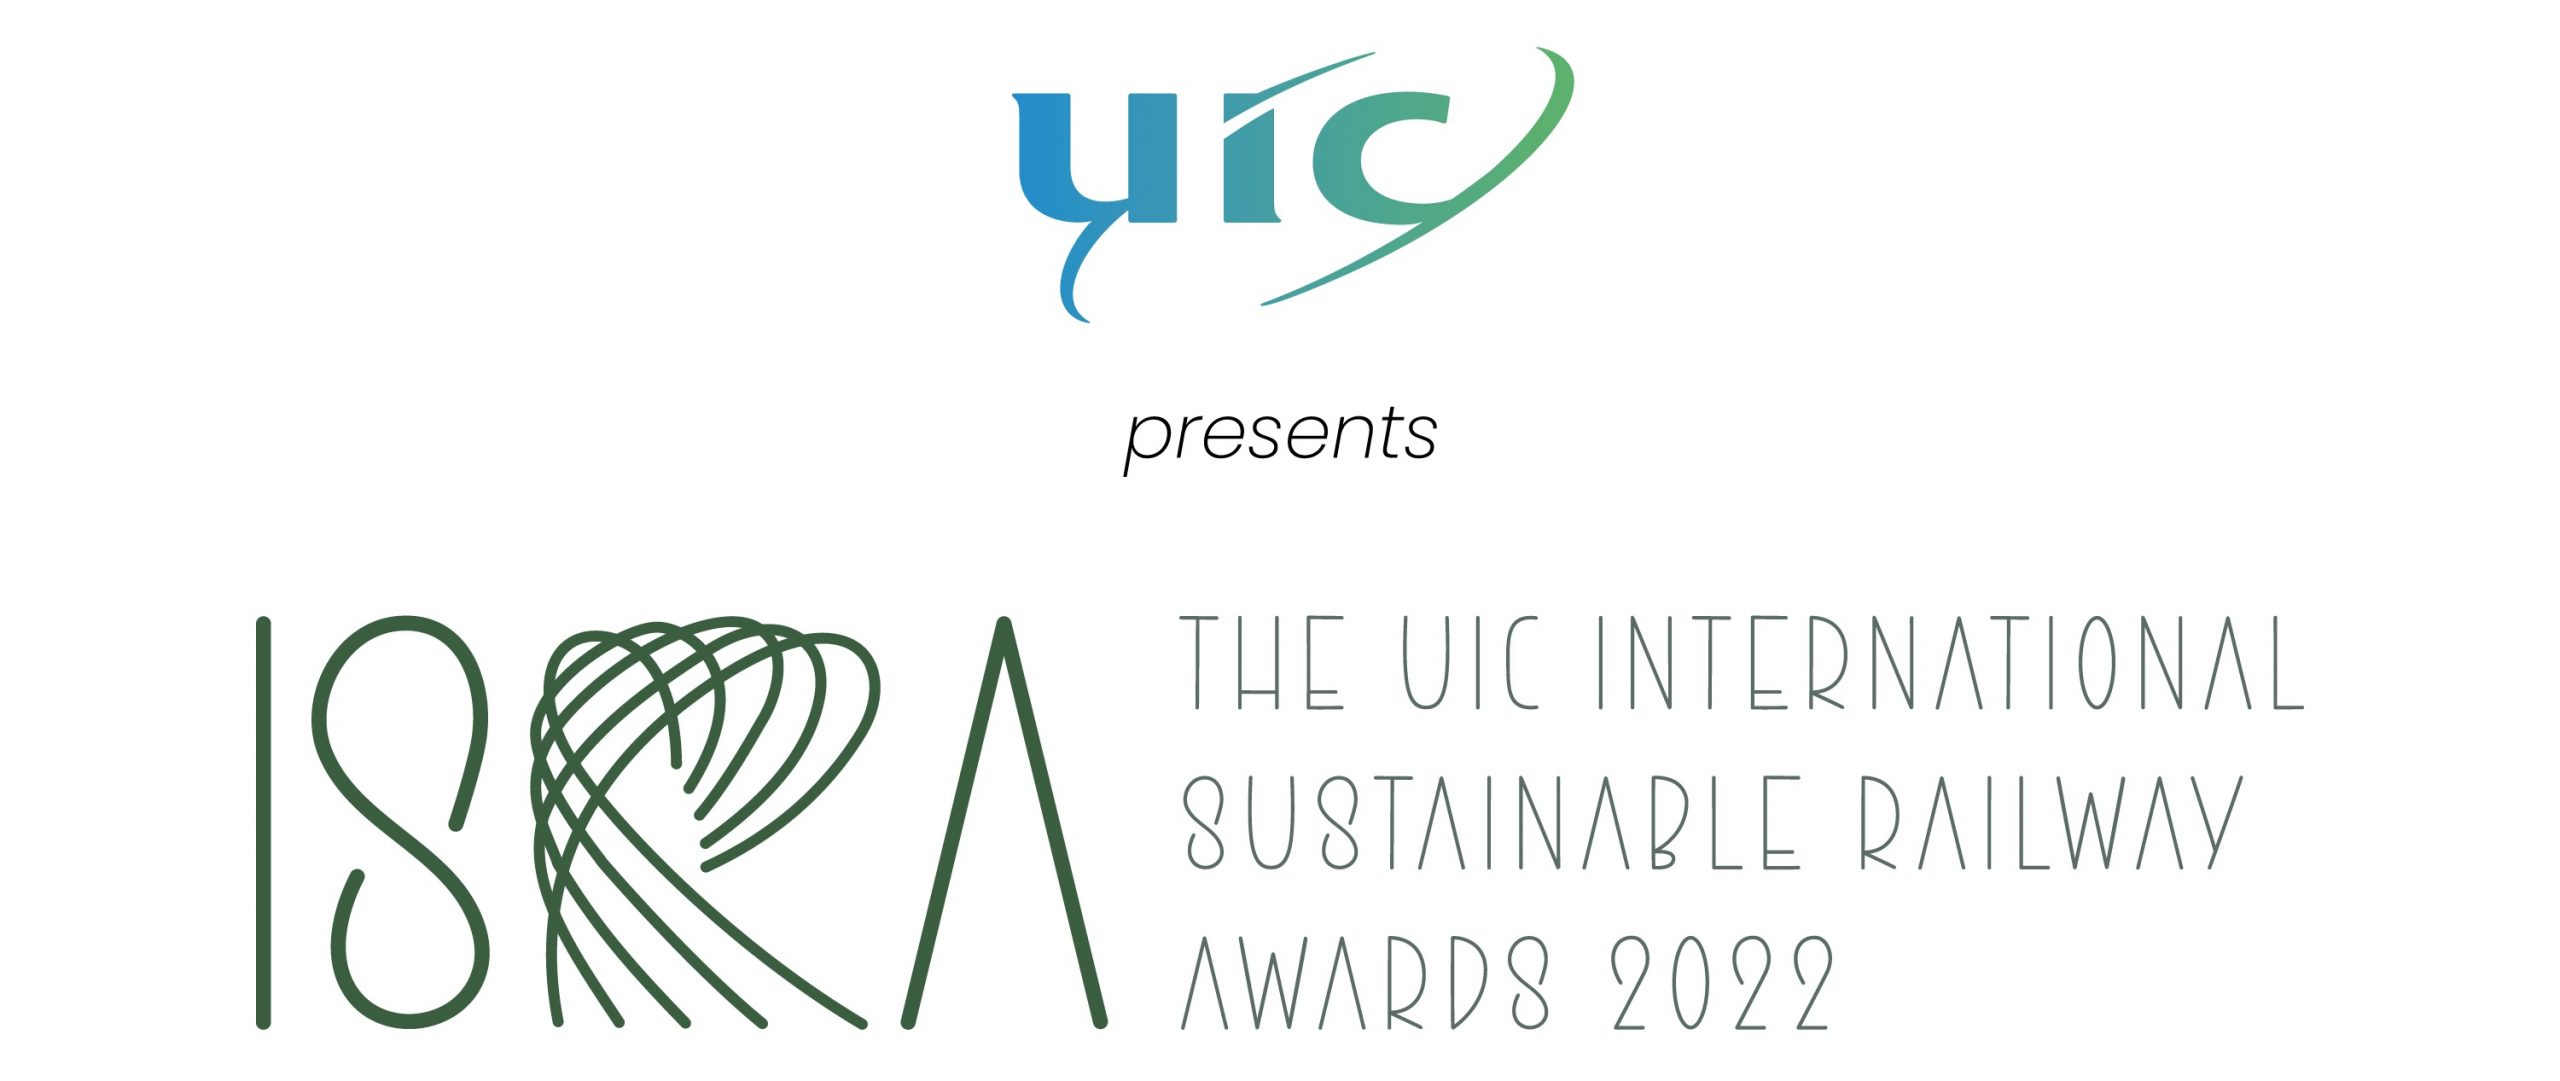 The UIC International Sustainable Railway Awards